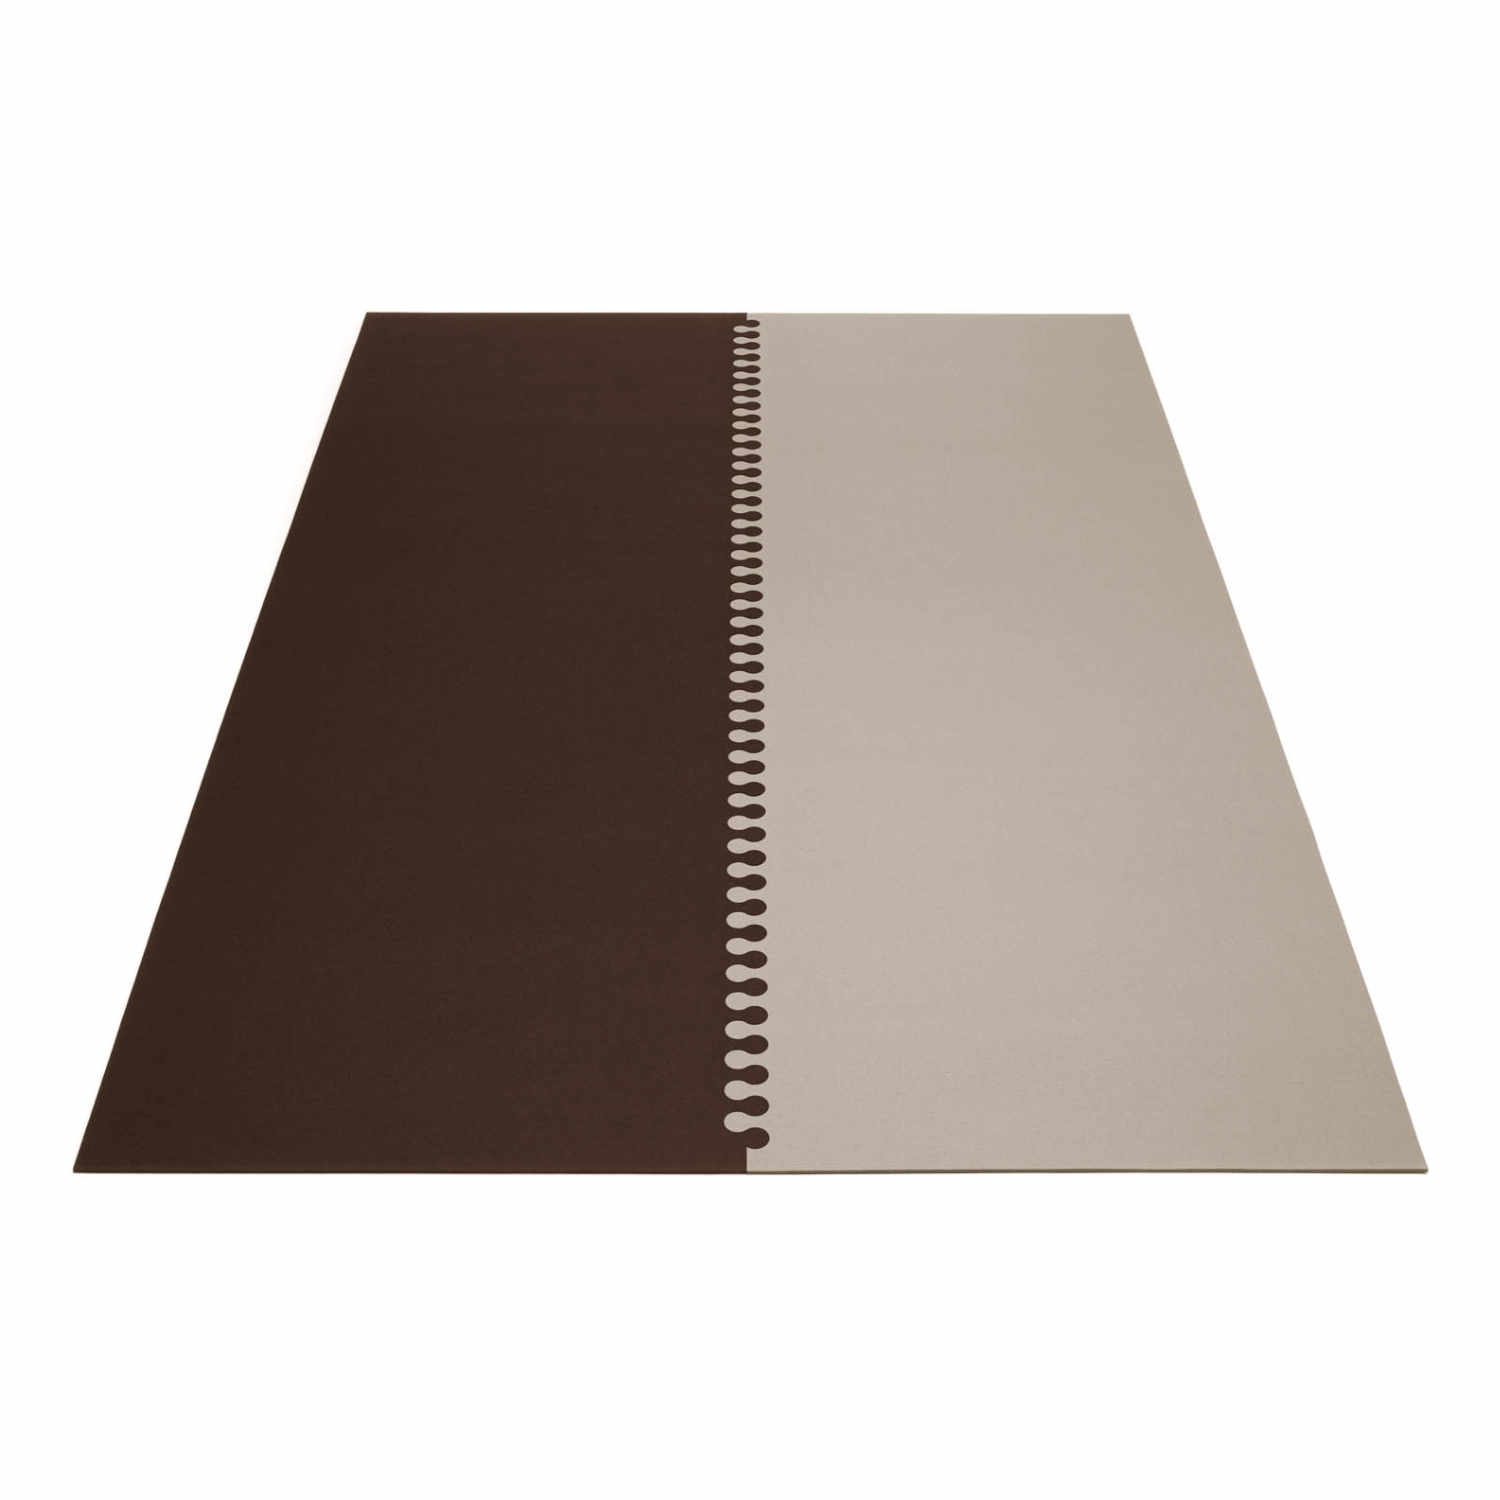 Zipp rechteckig 2-teilig Teppich , Farbe graphit, Farbe 2 marmor 06, Grösse 180 x 240 cm von HEY-SIGN